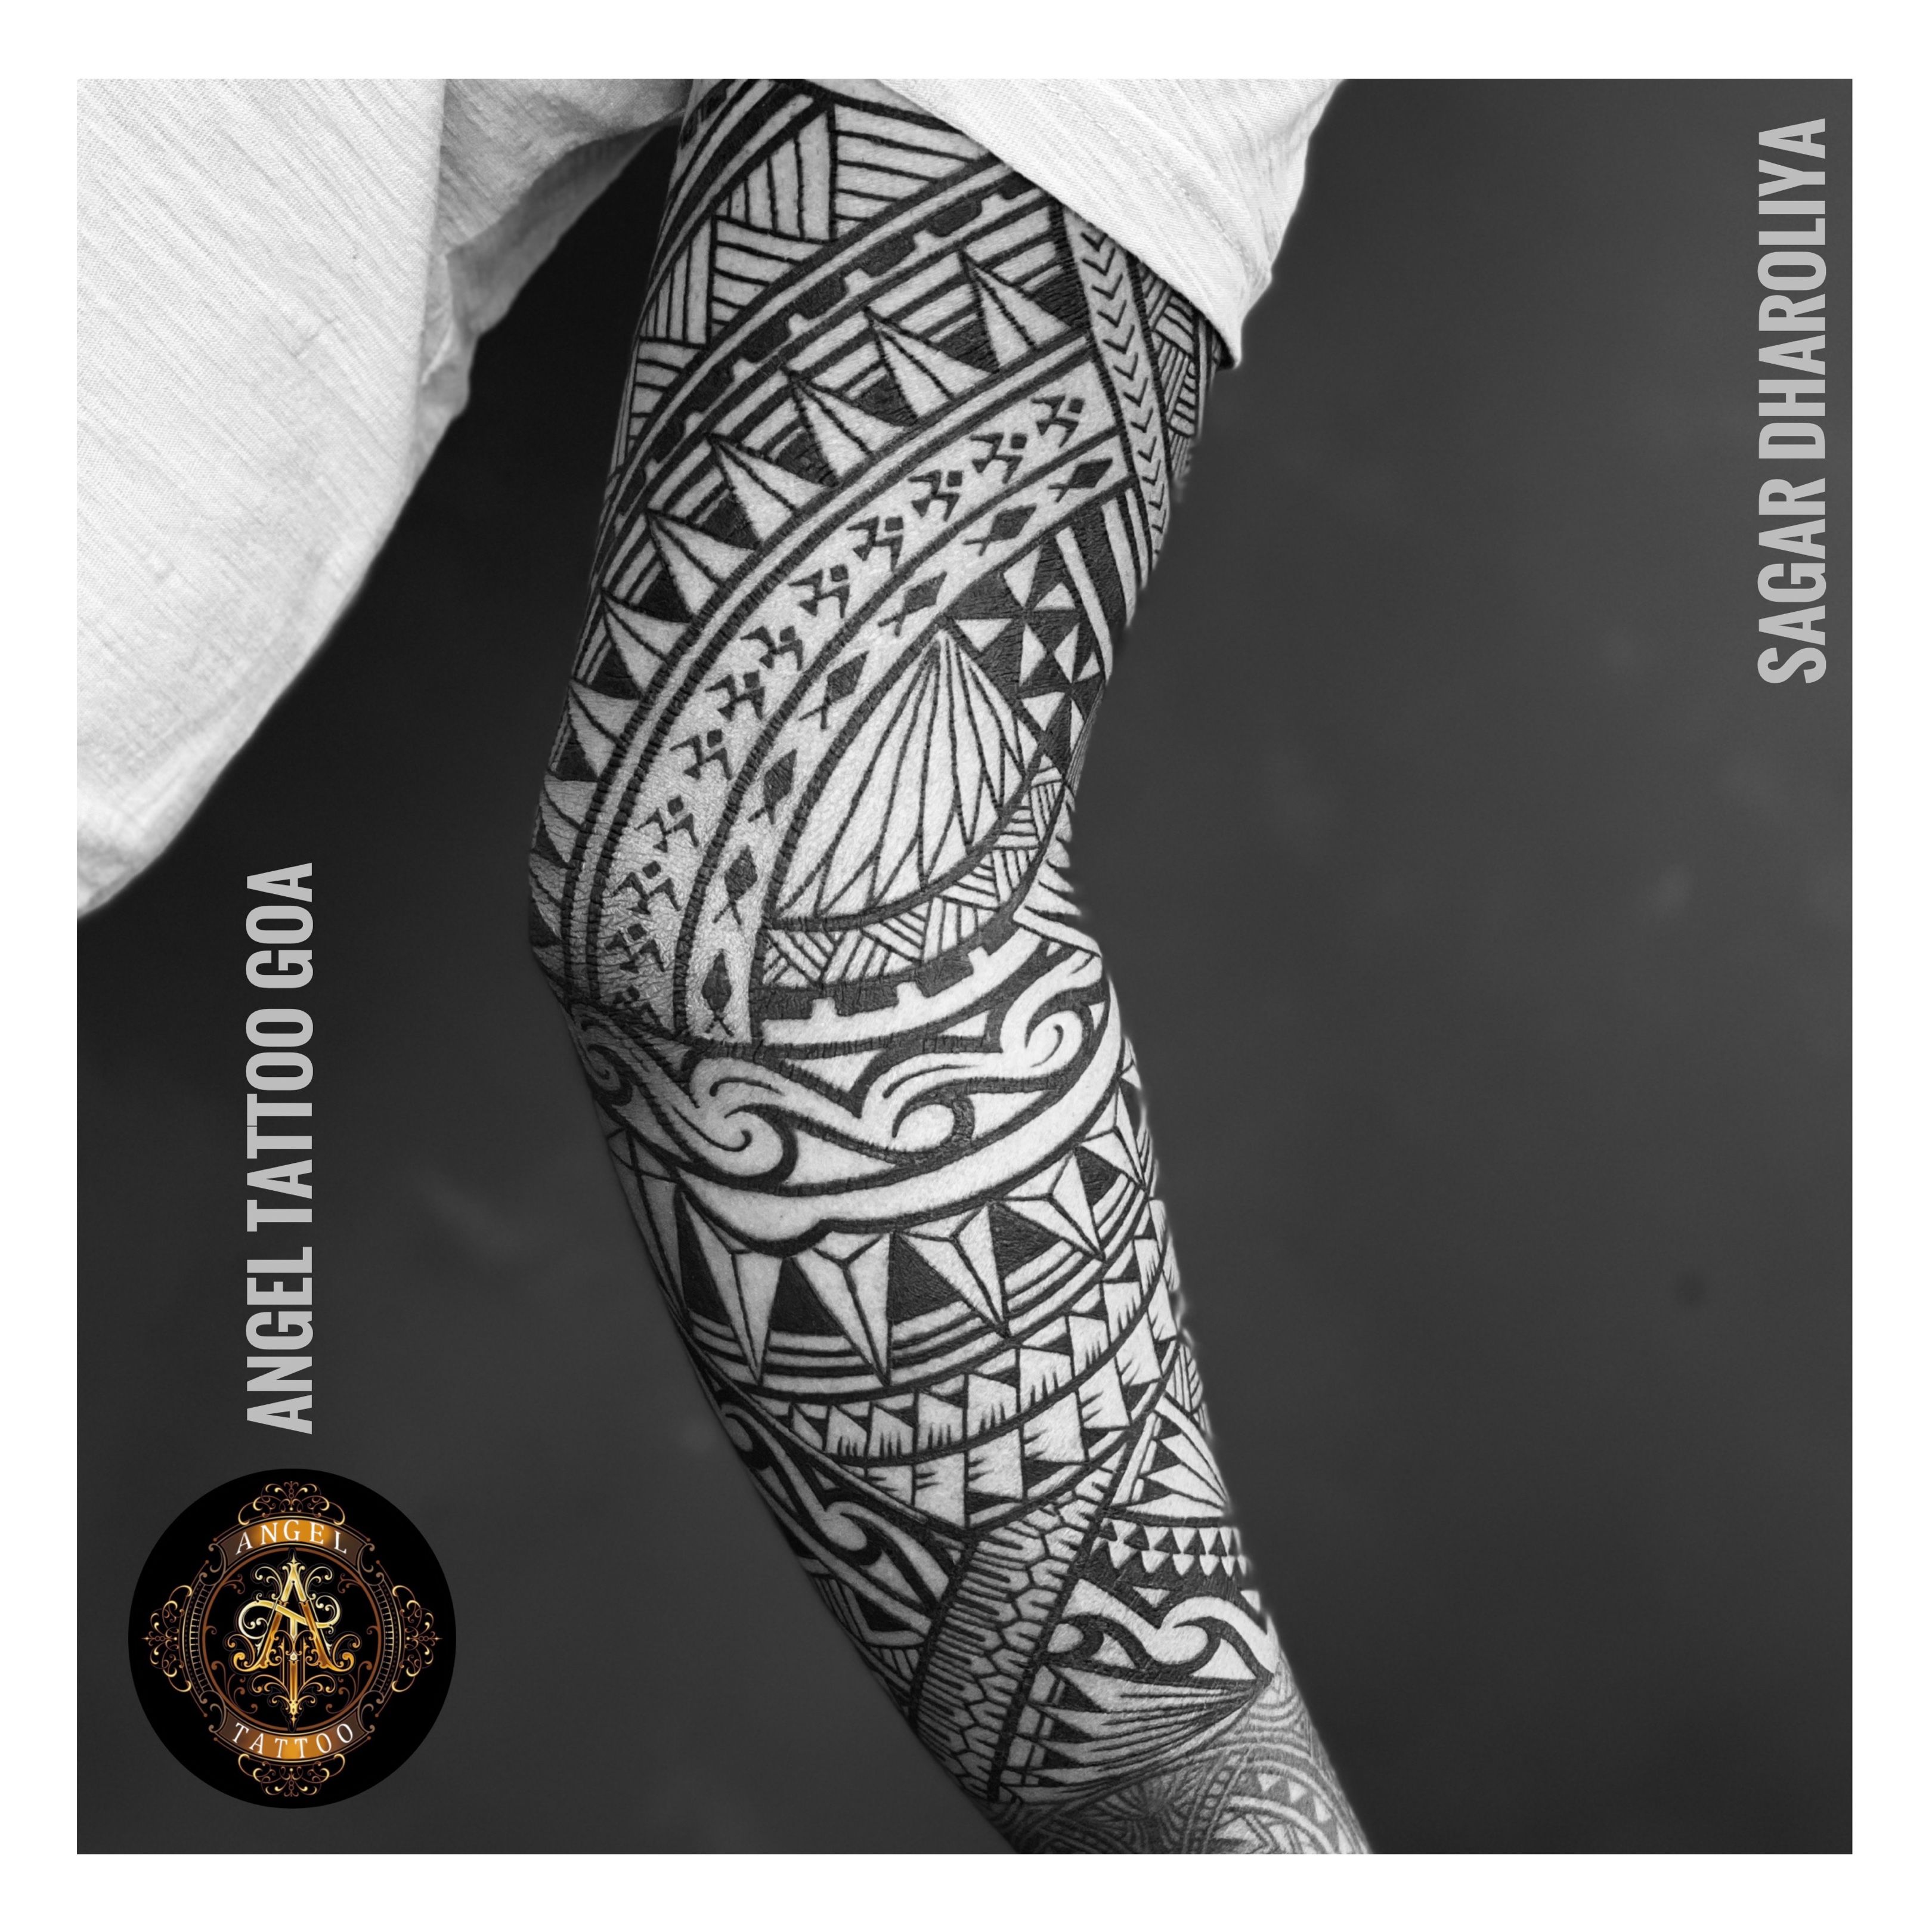 Customize a tribal tattoo, polynesian maori tattoo designs by  Experttattoo666 | Fiverr